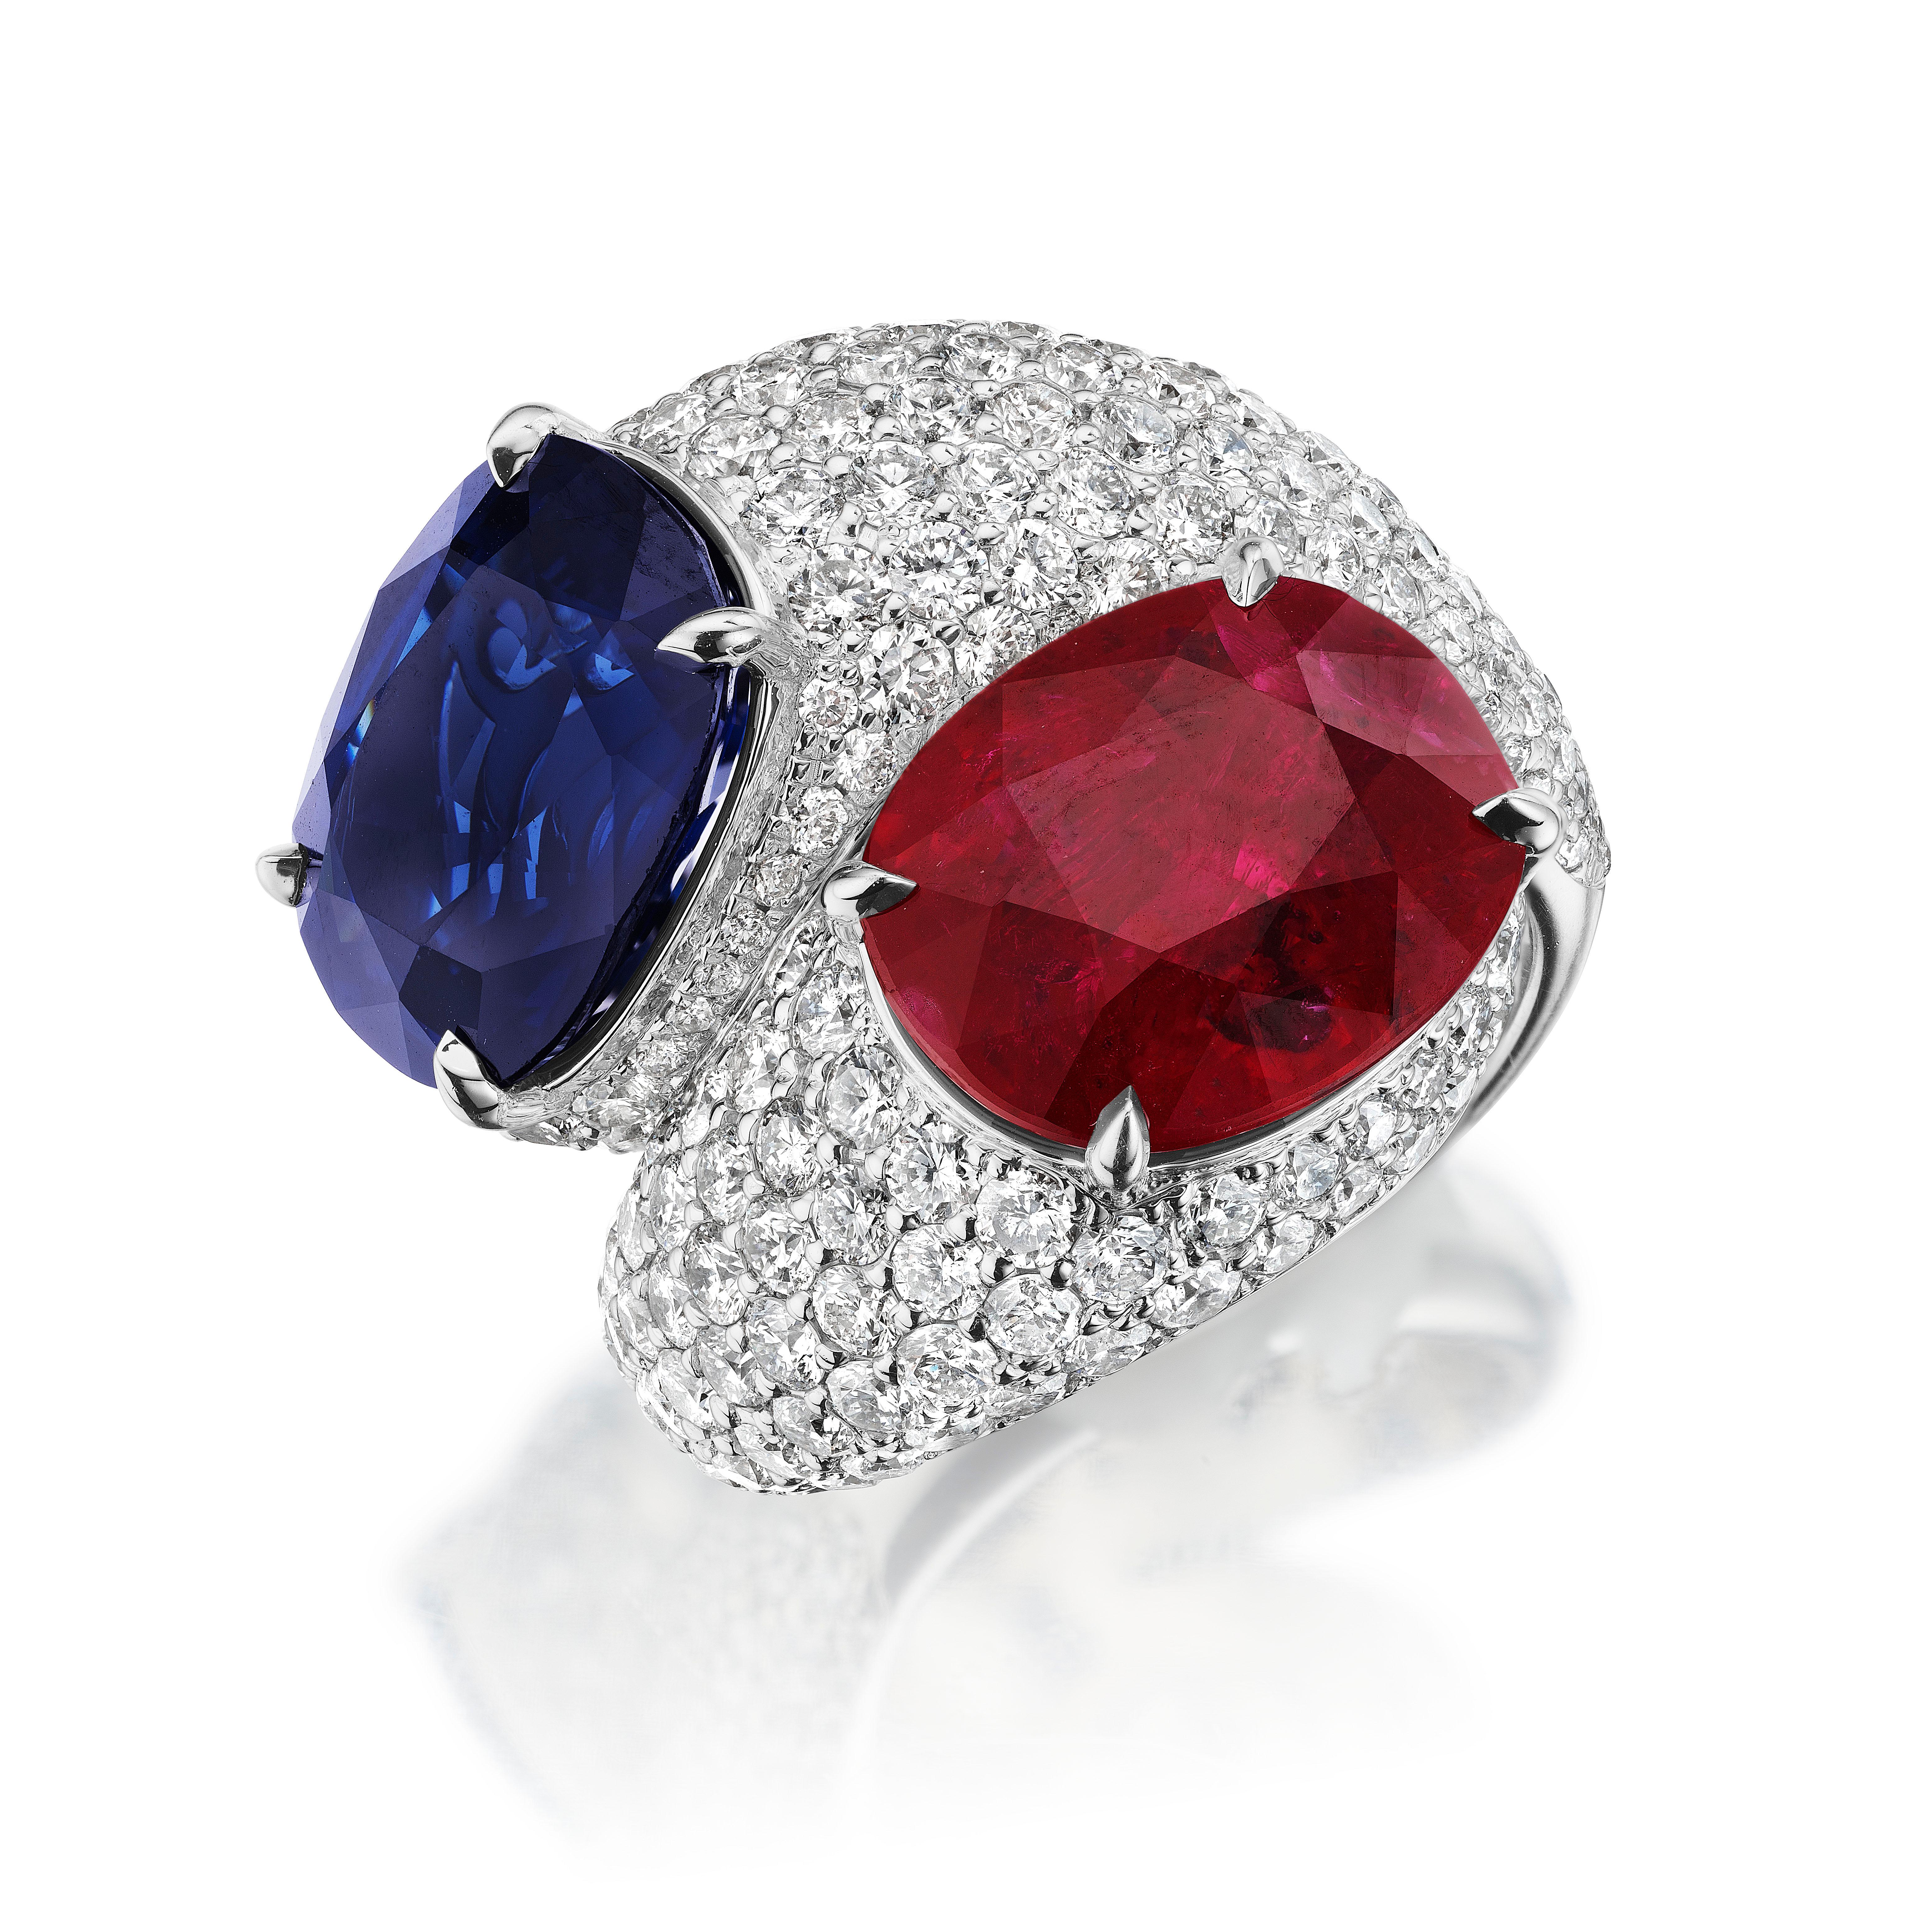 Dieser Bypass-Ring mit Rubinen und Saphiren aus Platin ist der Inbegriff von Exzellenz und Design. Dieses handgefertigte, moderne Design präsentiert einen außergewöhnlichen, tiefblauen Saphir aus Sri Lanka von 8,70 Karat, der von einem 8,11 Karat